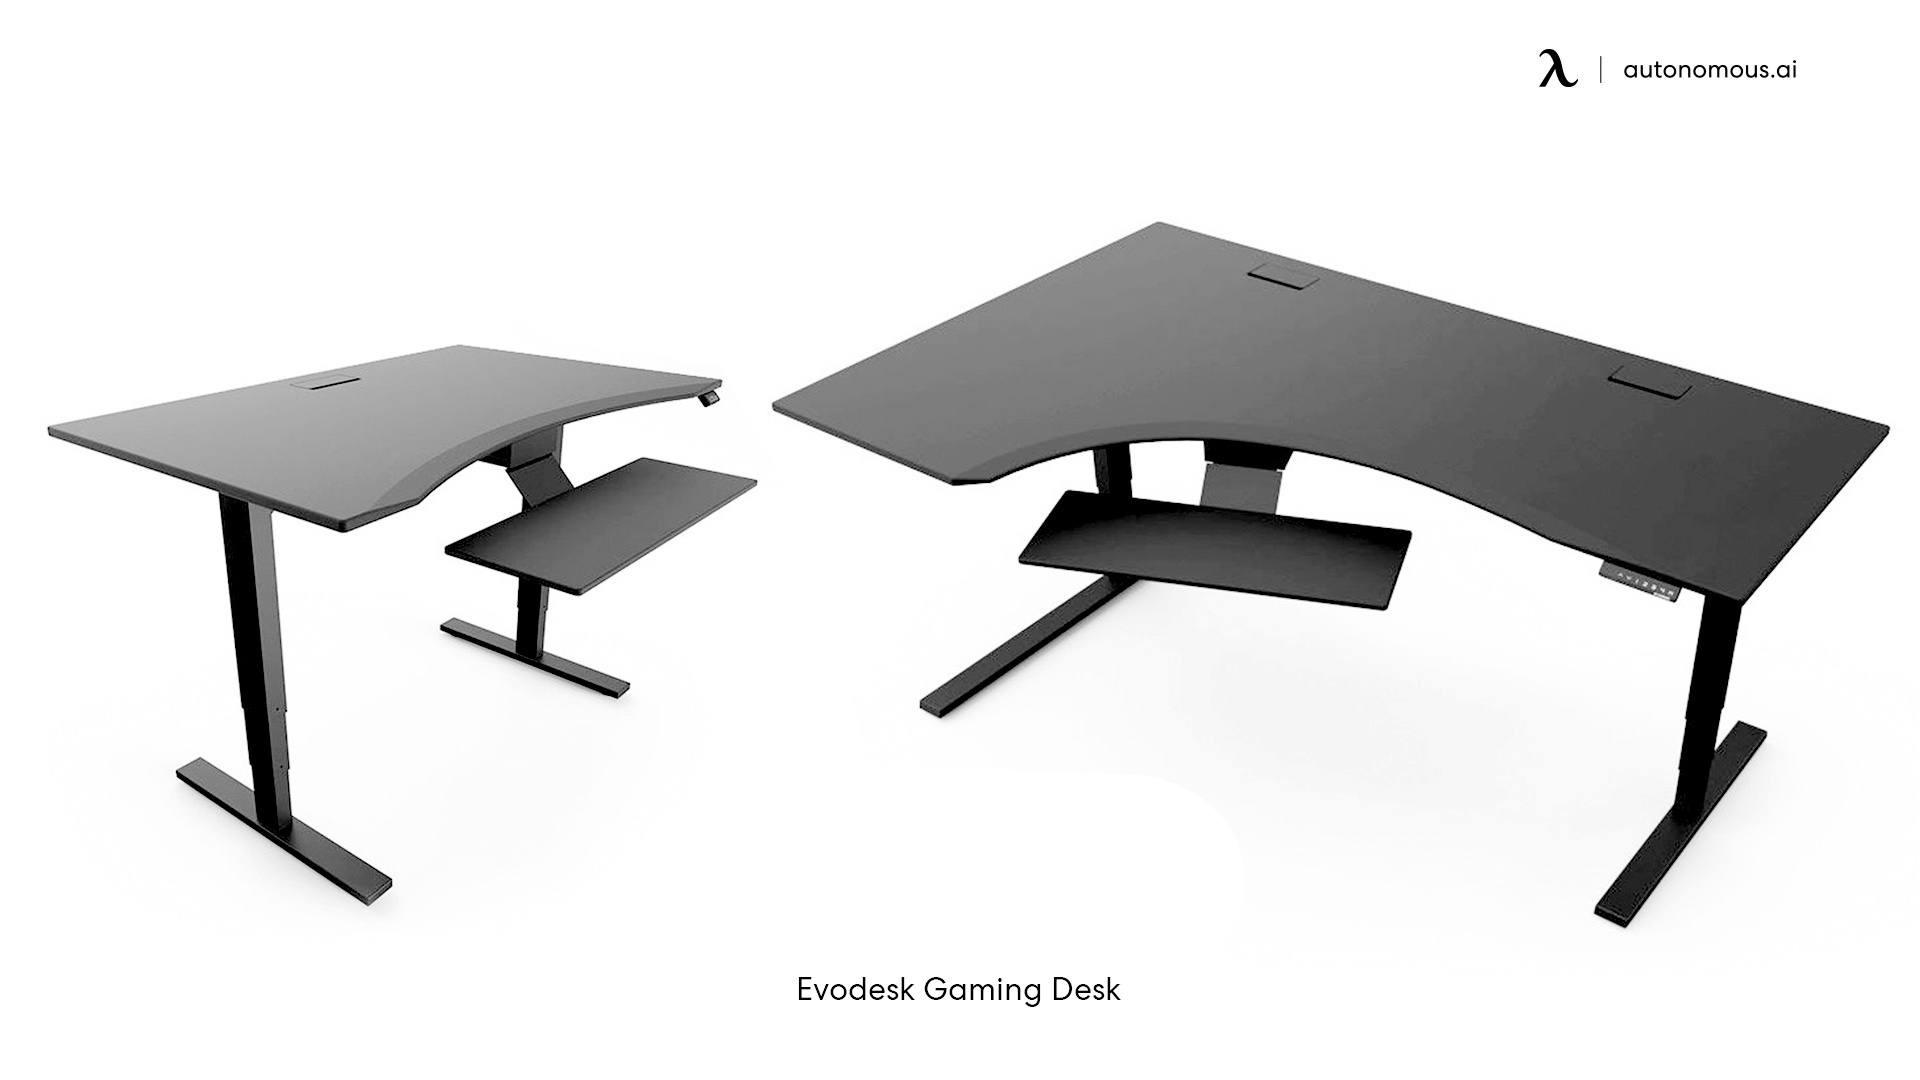 Evodesk Gaming Desk